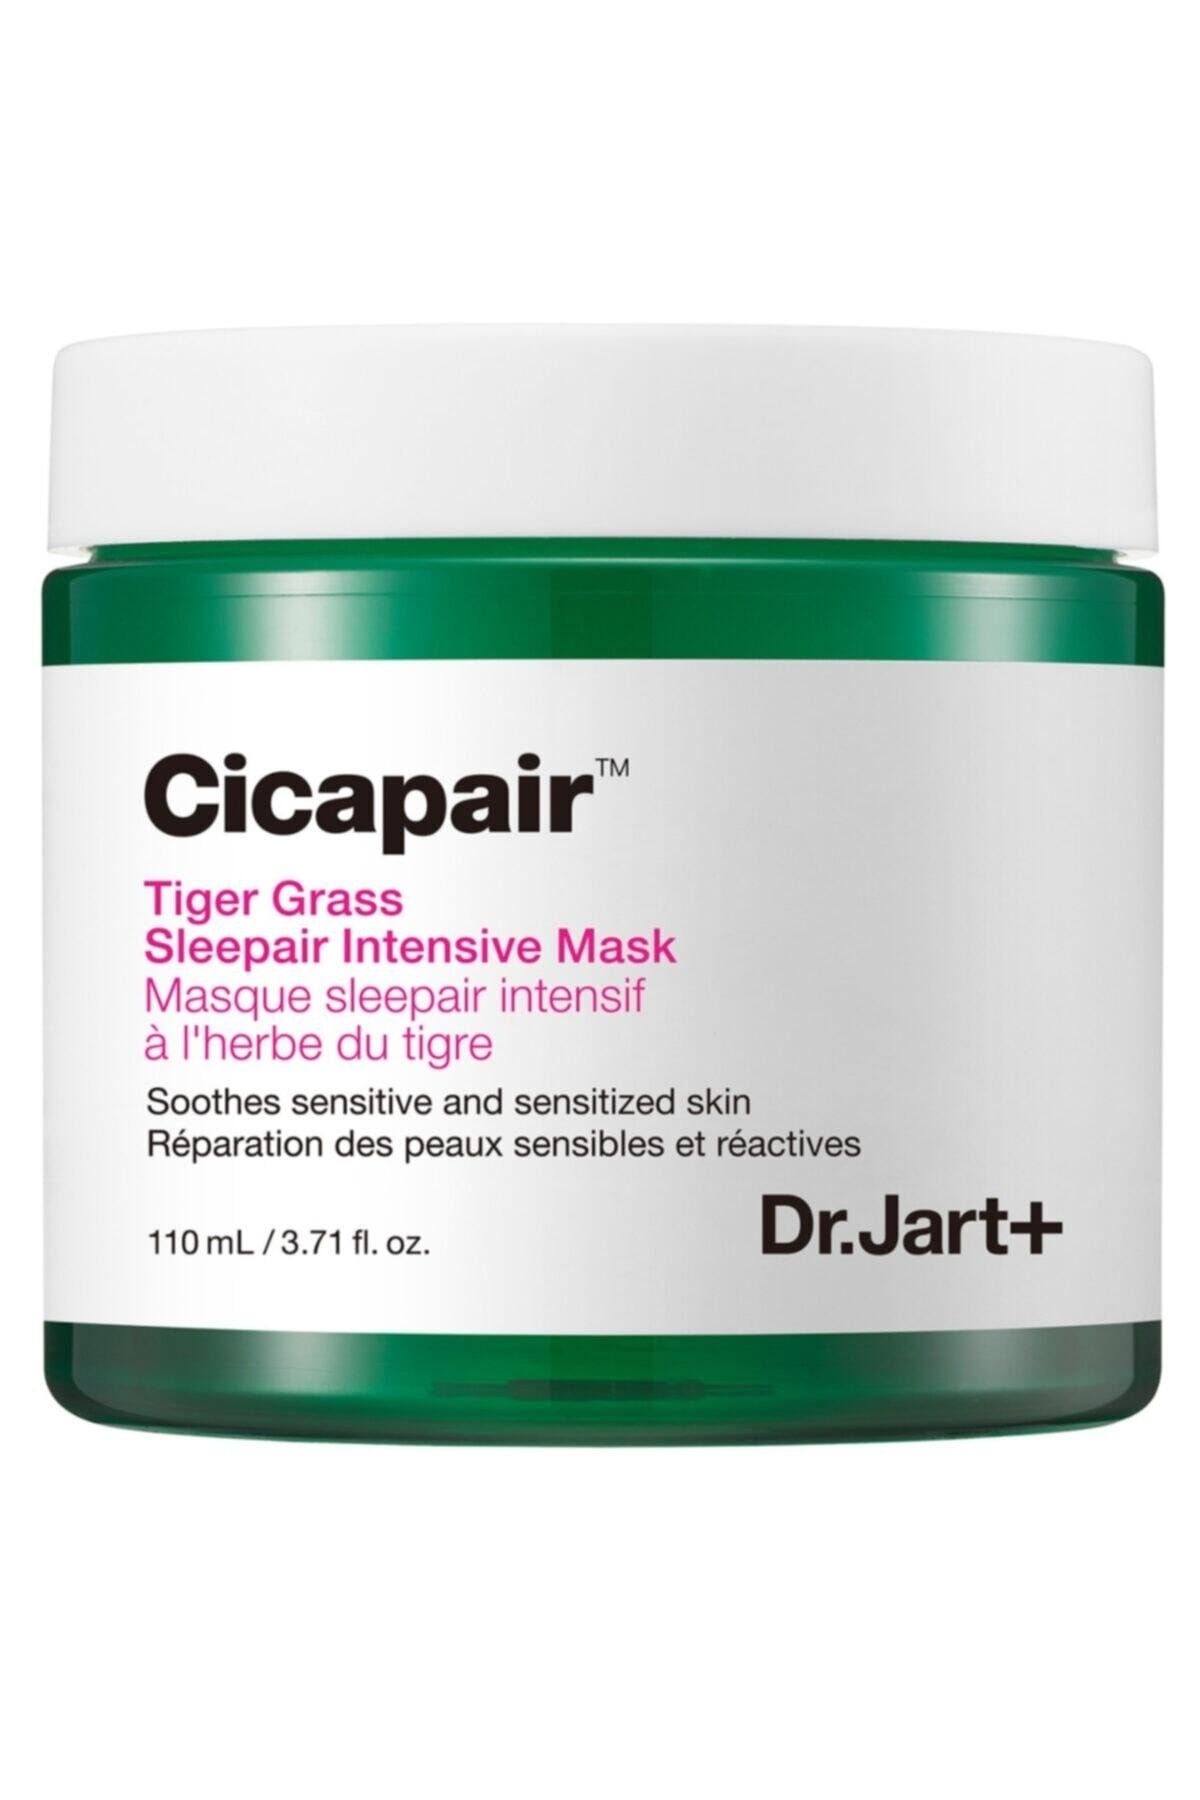 Dr.Jart Cicapair Tiger Grass Sleepair Intensive Mask